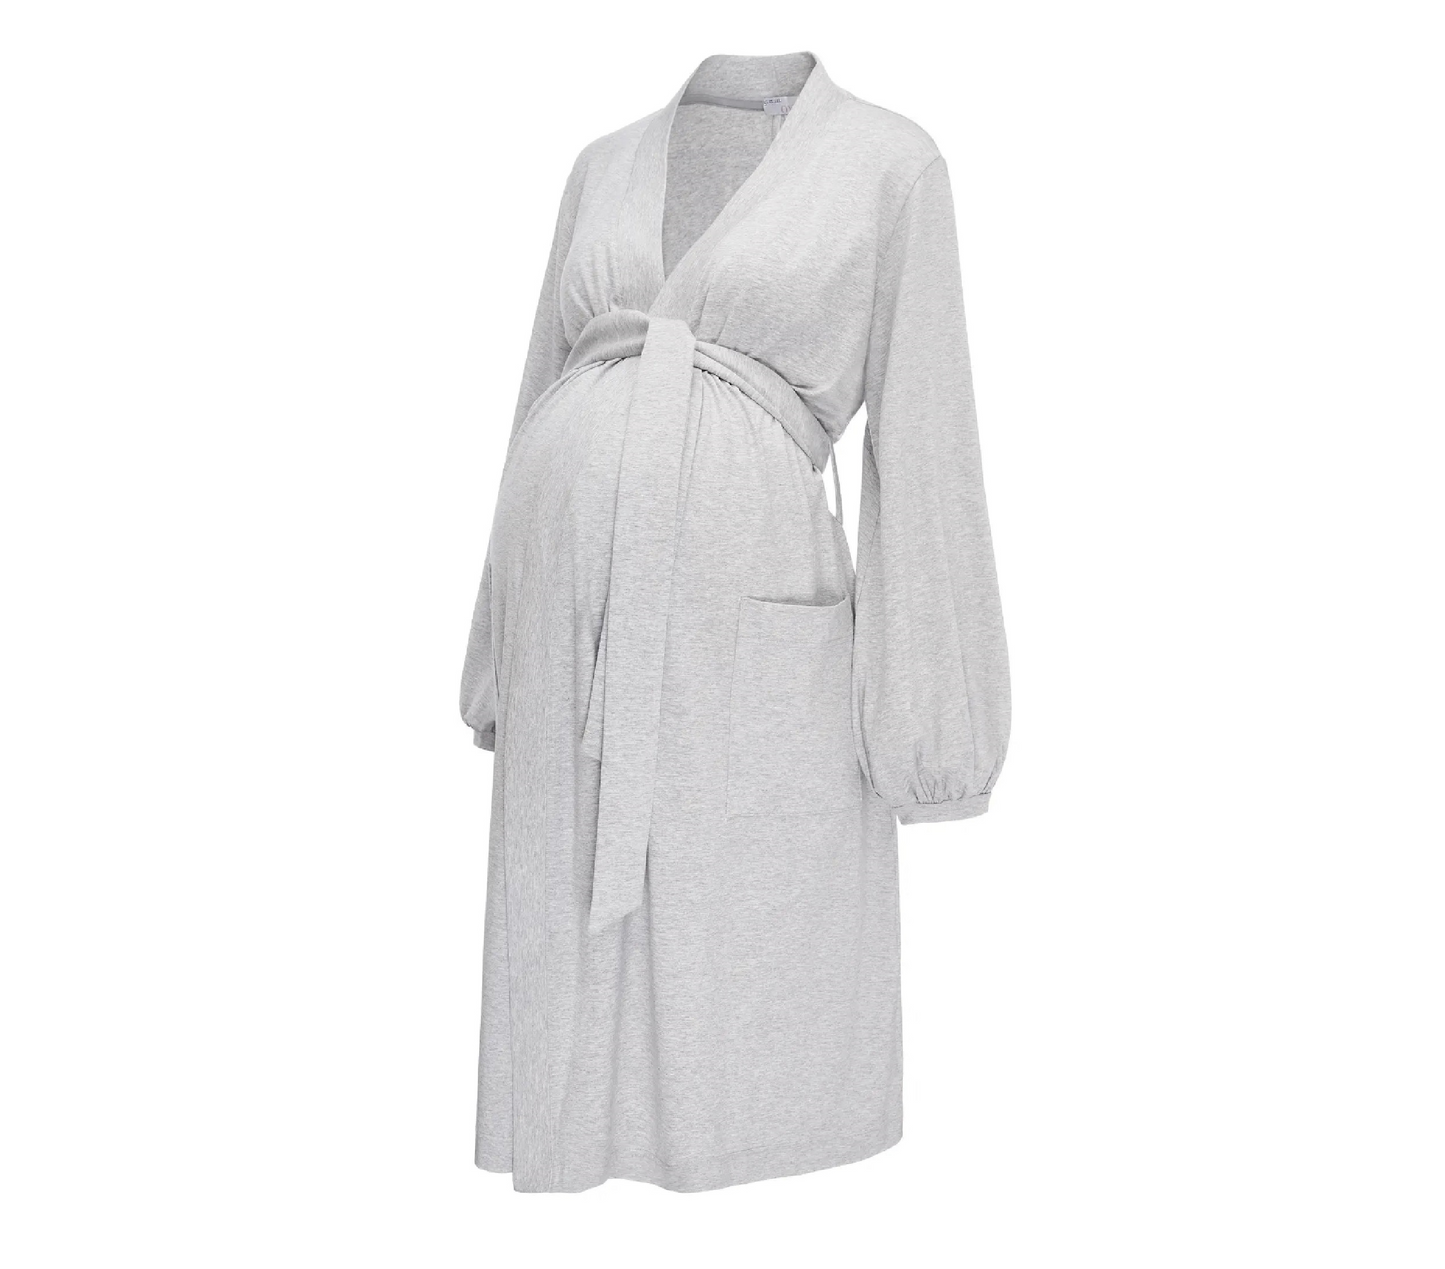 Een comfortabele, perfect passende kamerjas voor de zwangere vrouw: in een ongelooflijk zachte Tencel-stof, met zakken.